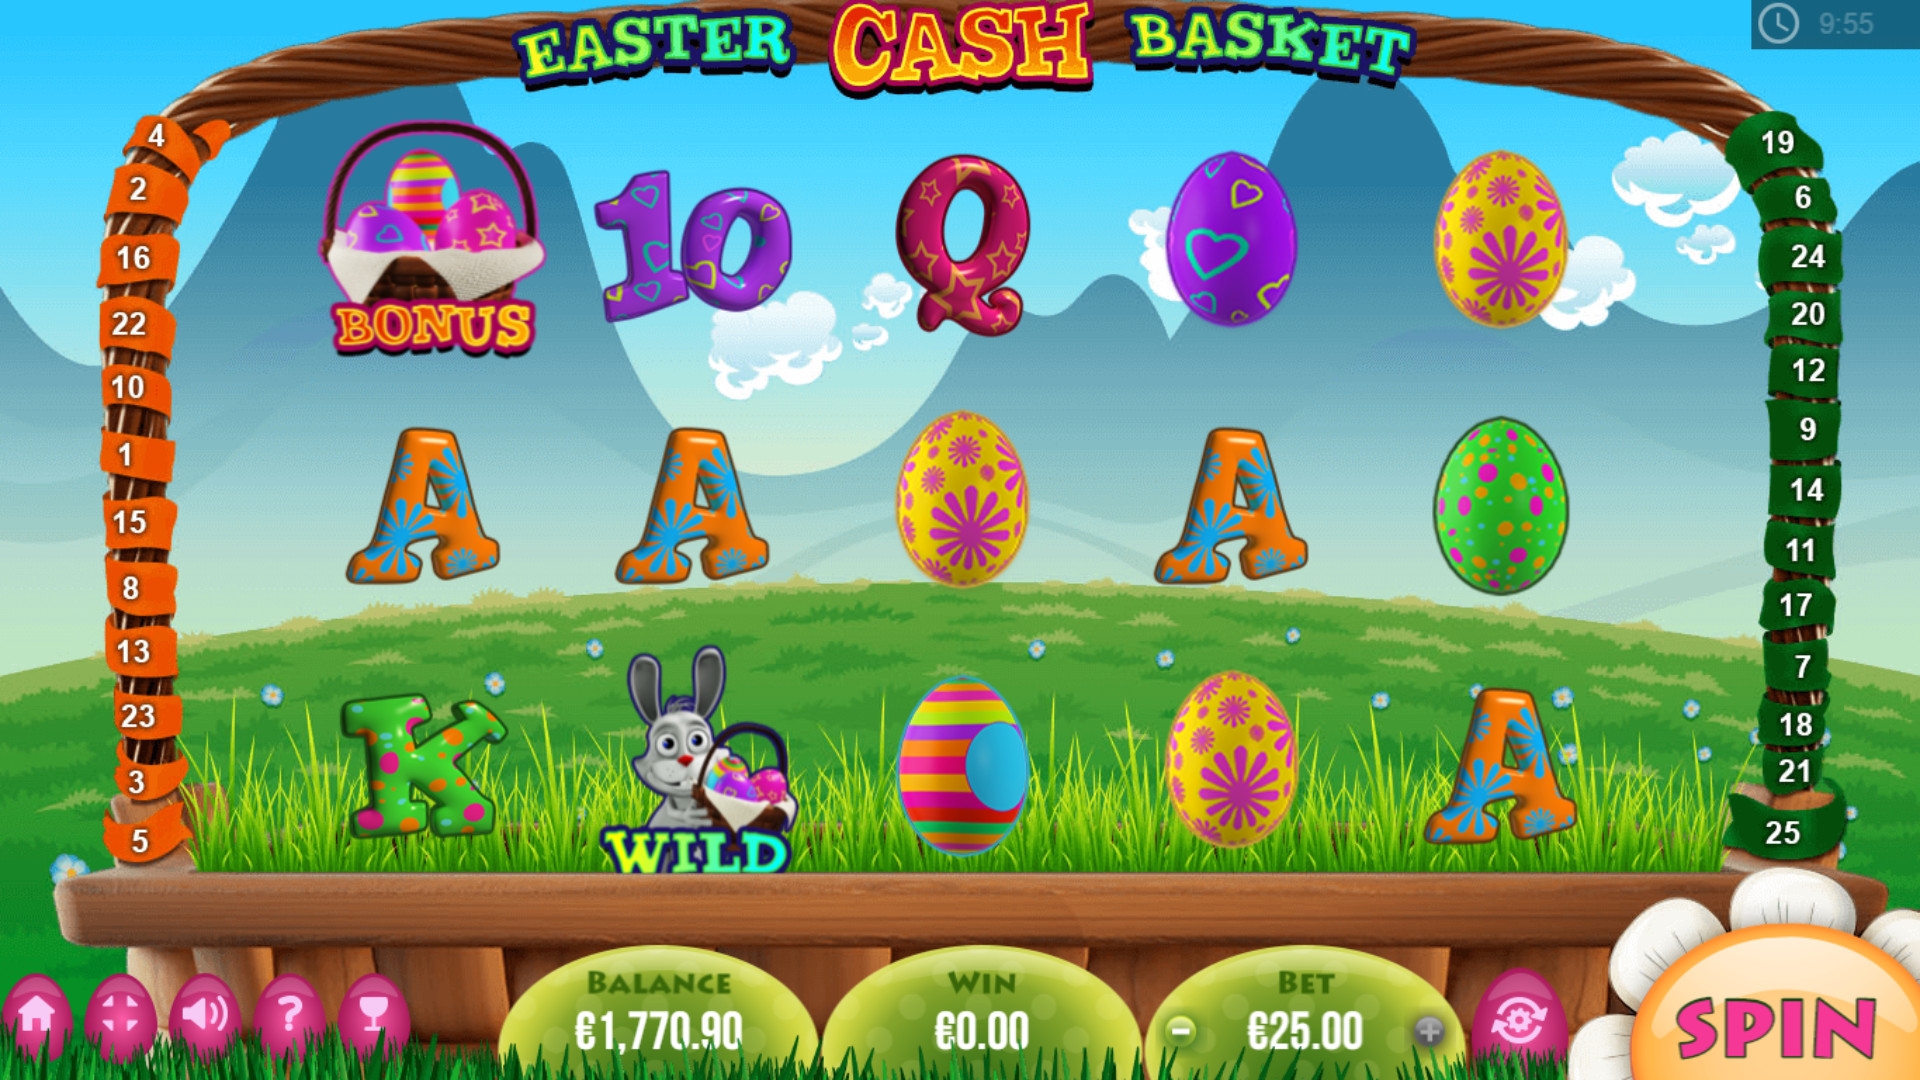 Easter Cash Basket (Пасхальная денежная корзина) из раздела Игровые автоматы